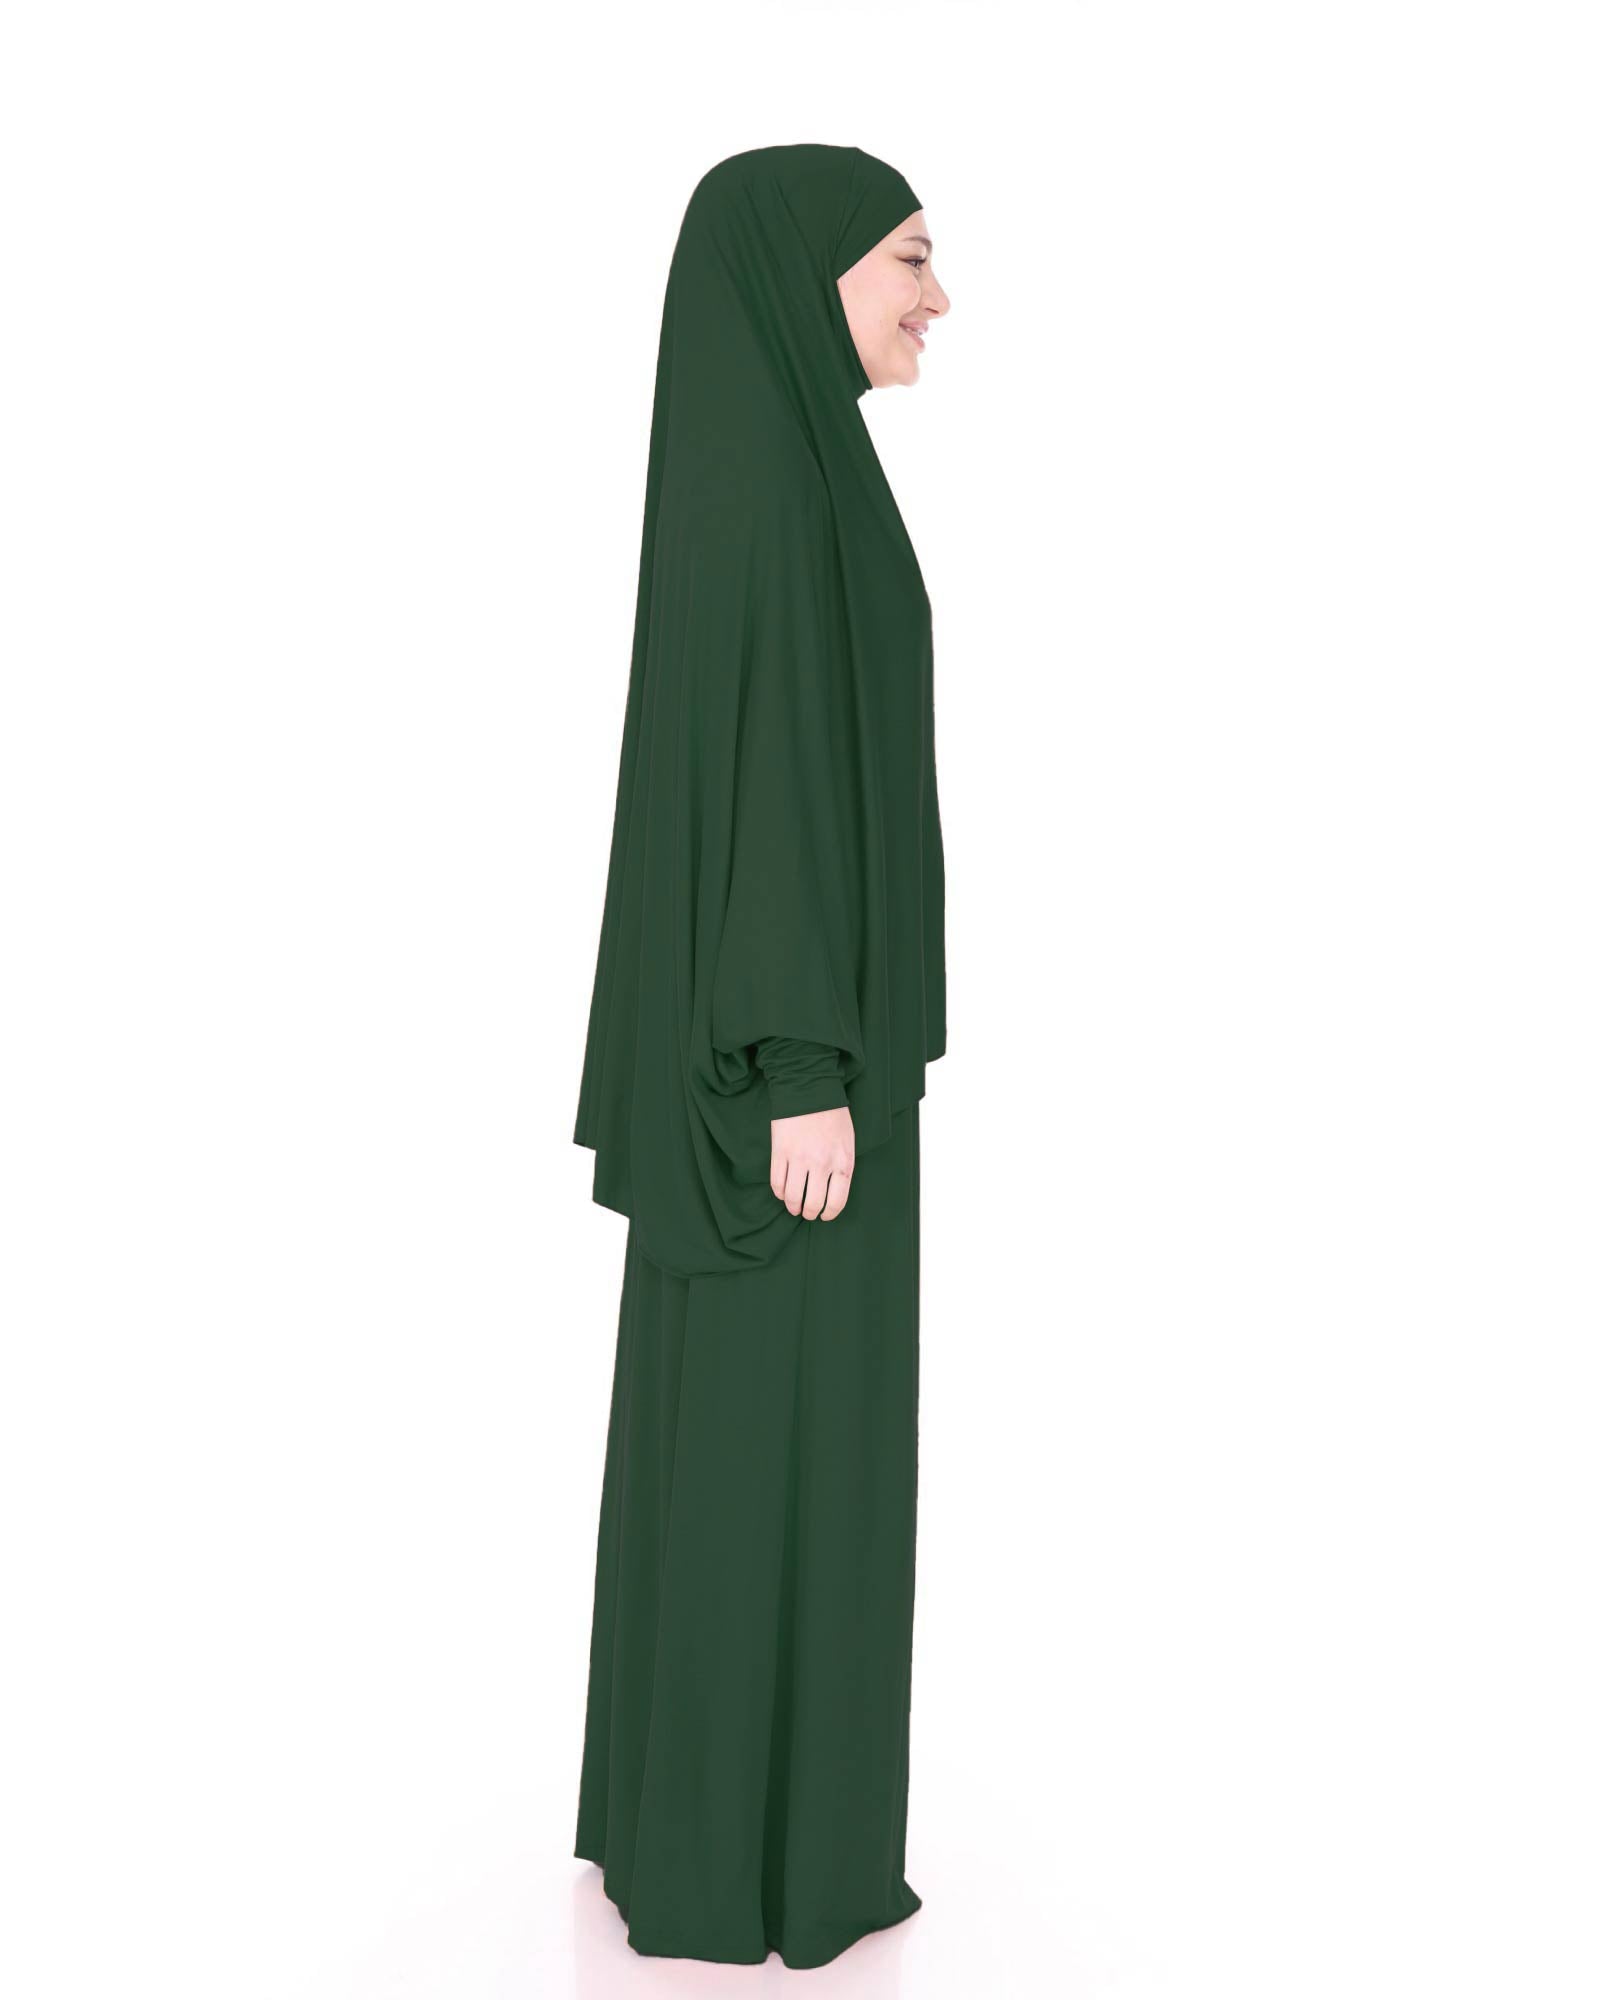 Hijab-Zweiteiler mit Kopftuch und Rock Giftgrün Standard